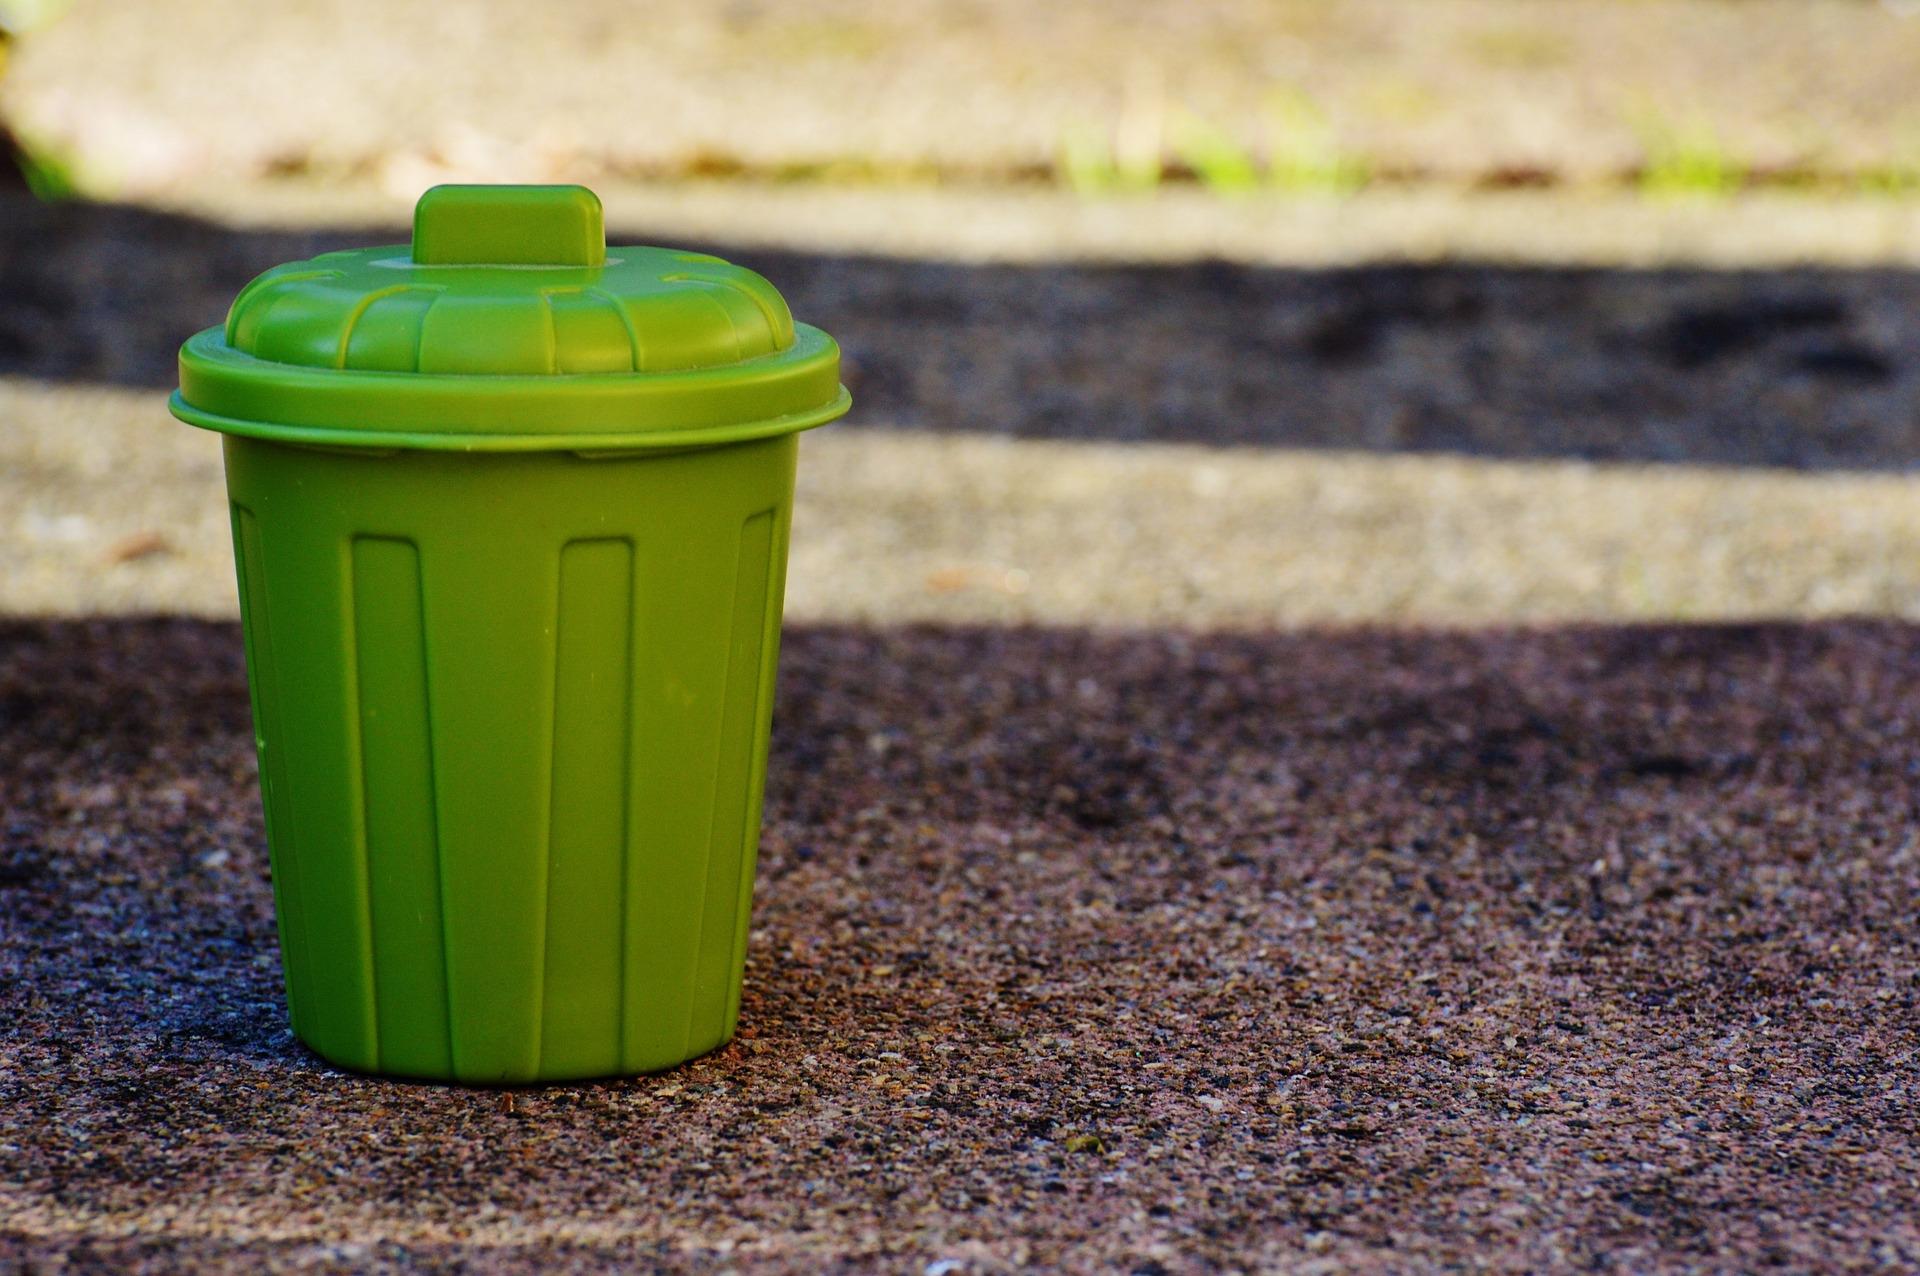 Goda exempel kan påverka människor att ändra sina konsumtionsvanor. Deltagarna i projektet Minimeringsmästarna vägde sitt avfall i början och slutet av projektåret. Det blev en ögonöppnare för att minska mängderna avfall. (Bild: Pixabay)